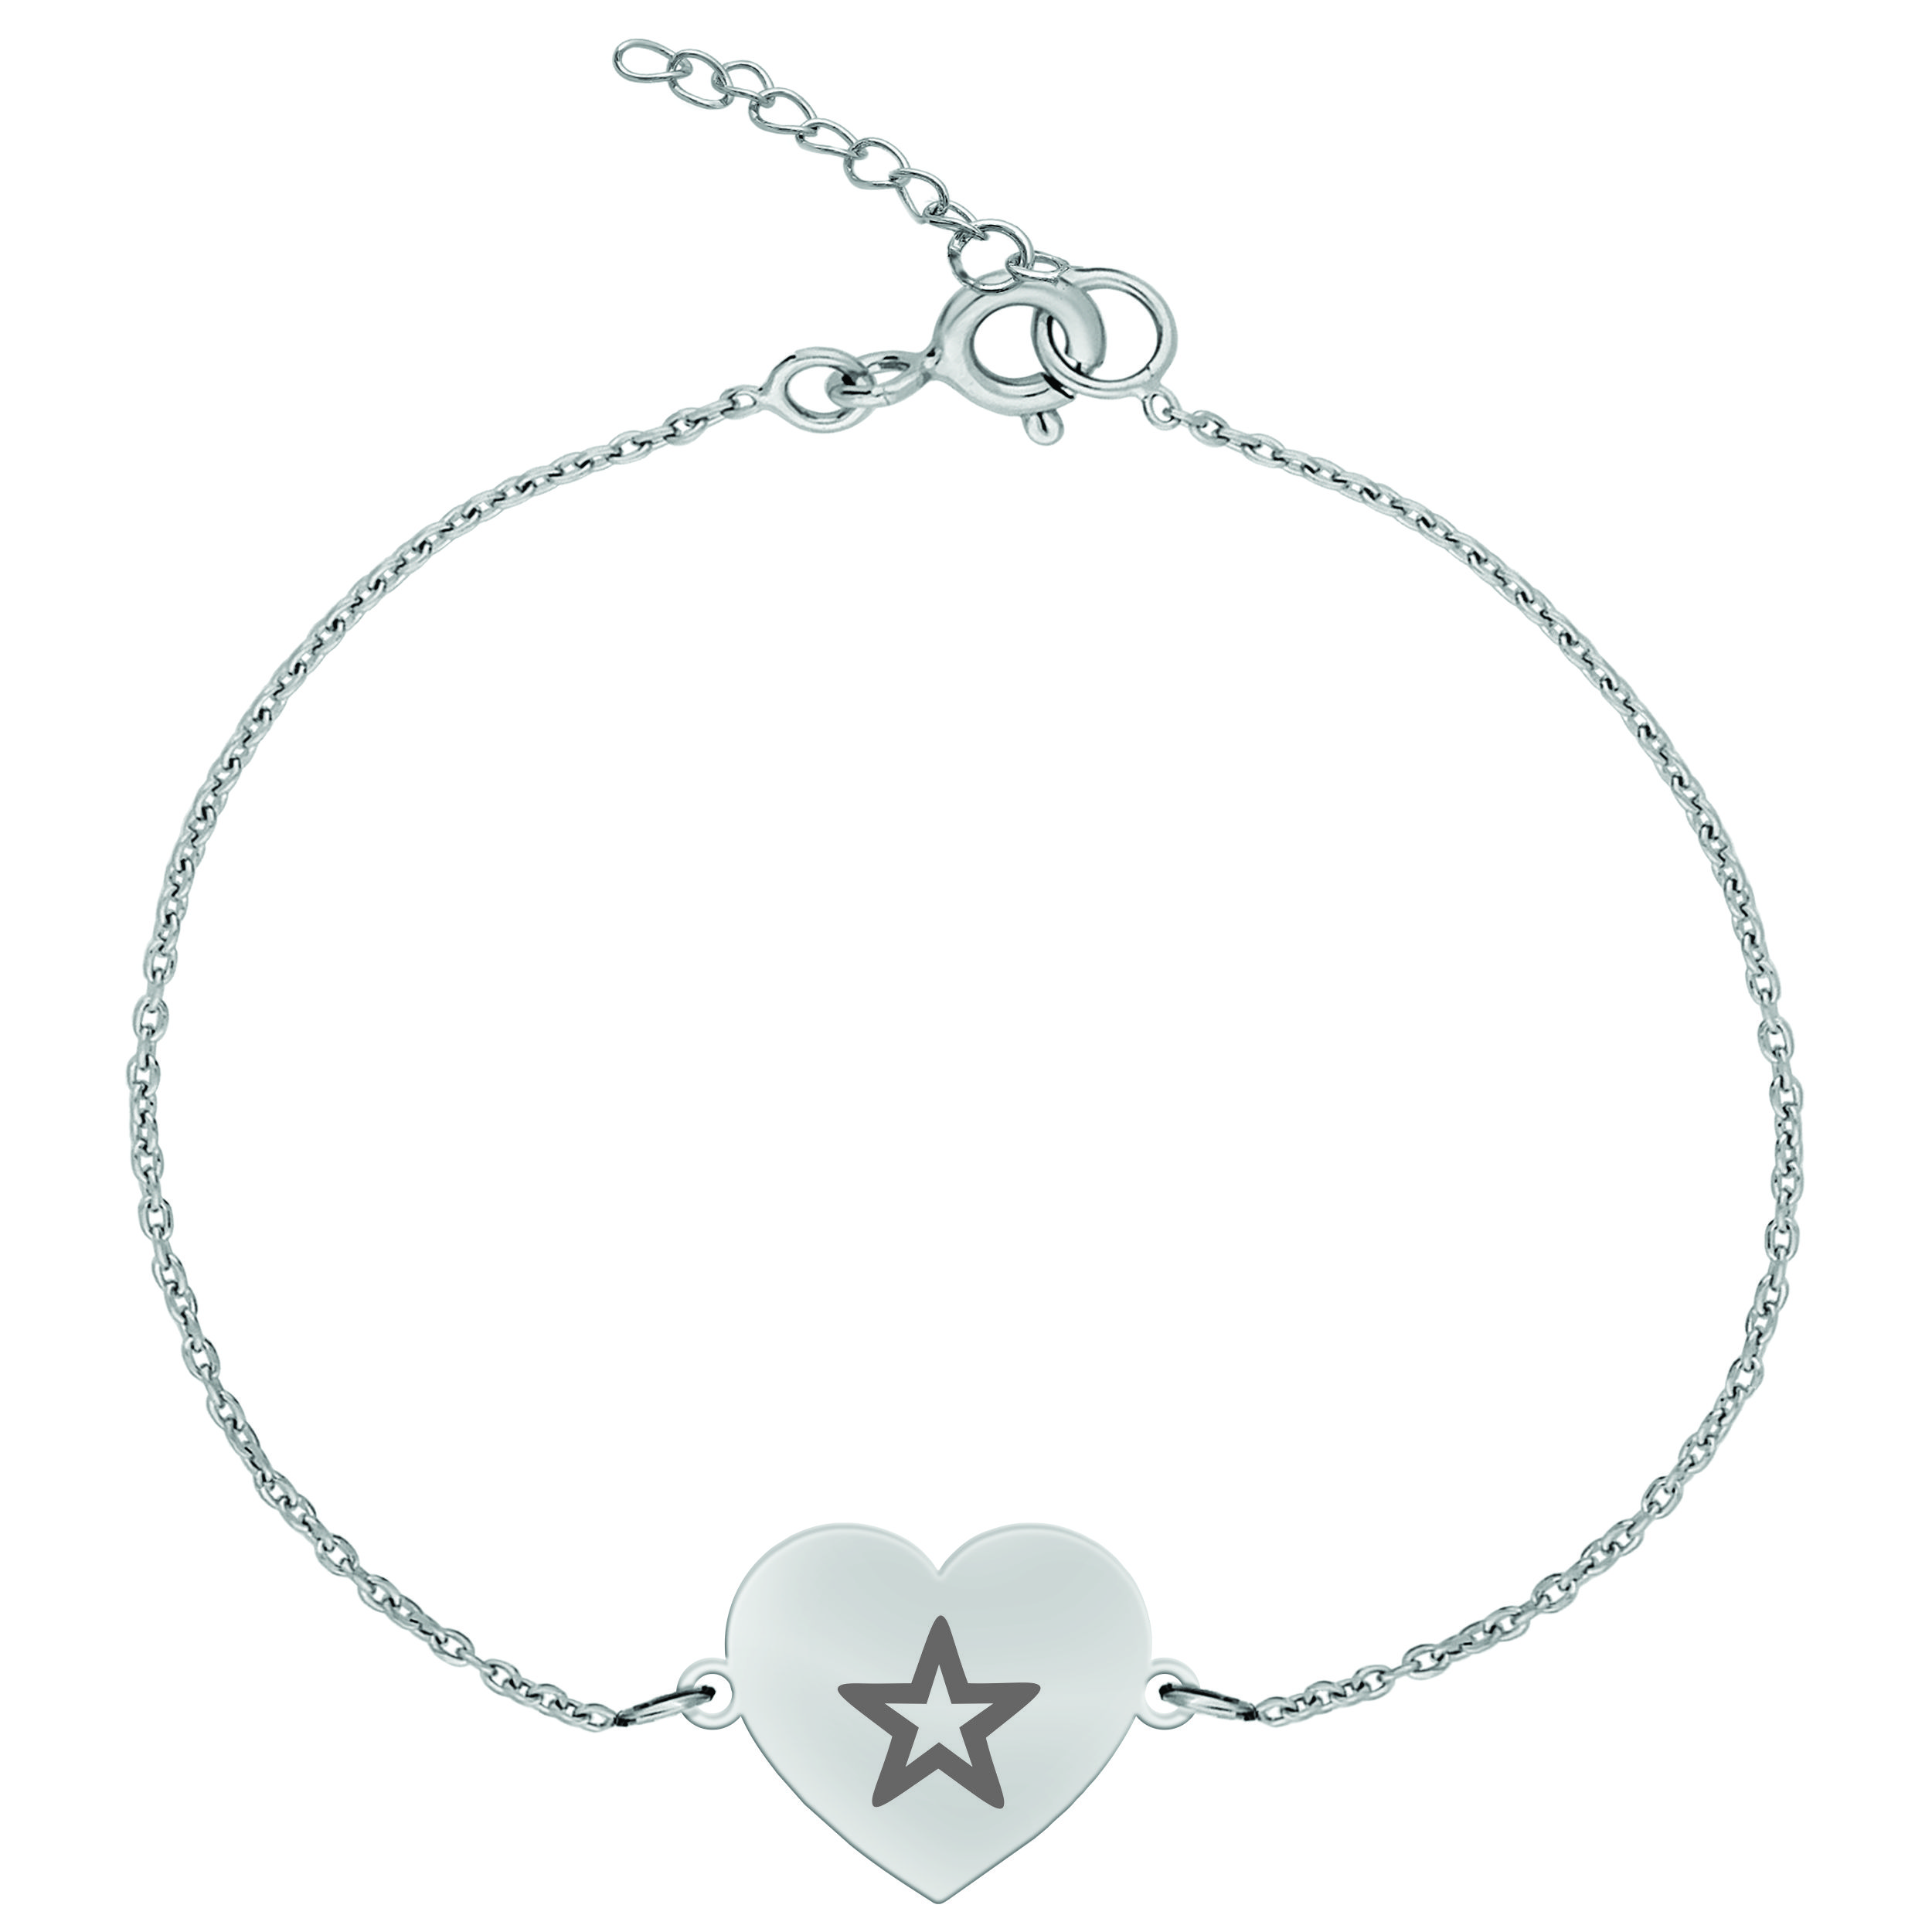 دستبند نقره زنانه ترمه 1 مدل ستاره کد DN 1035